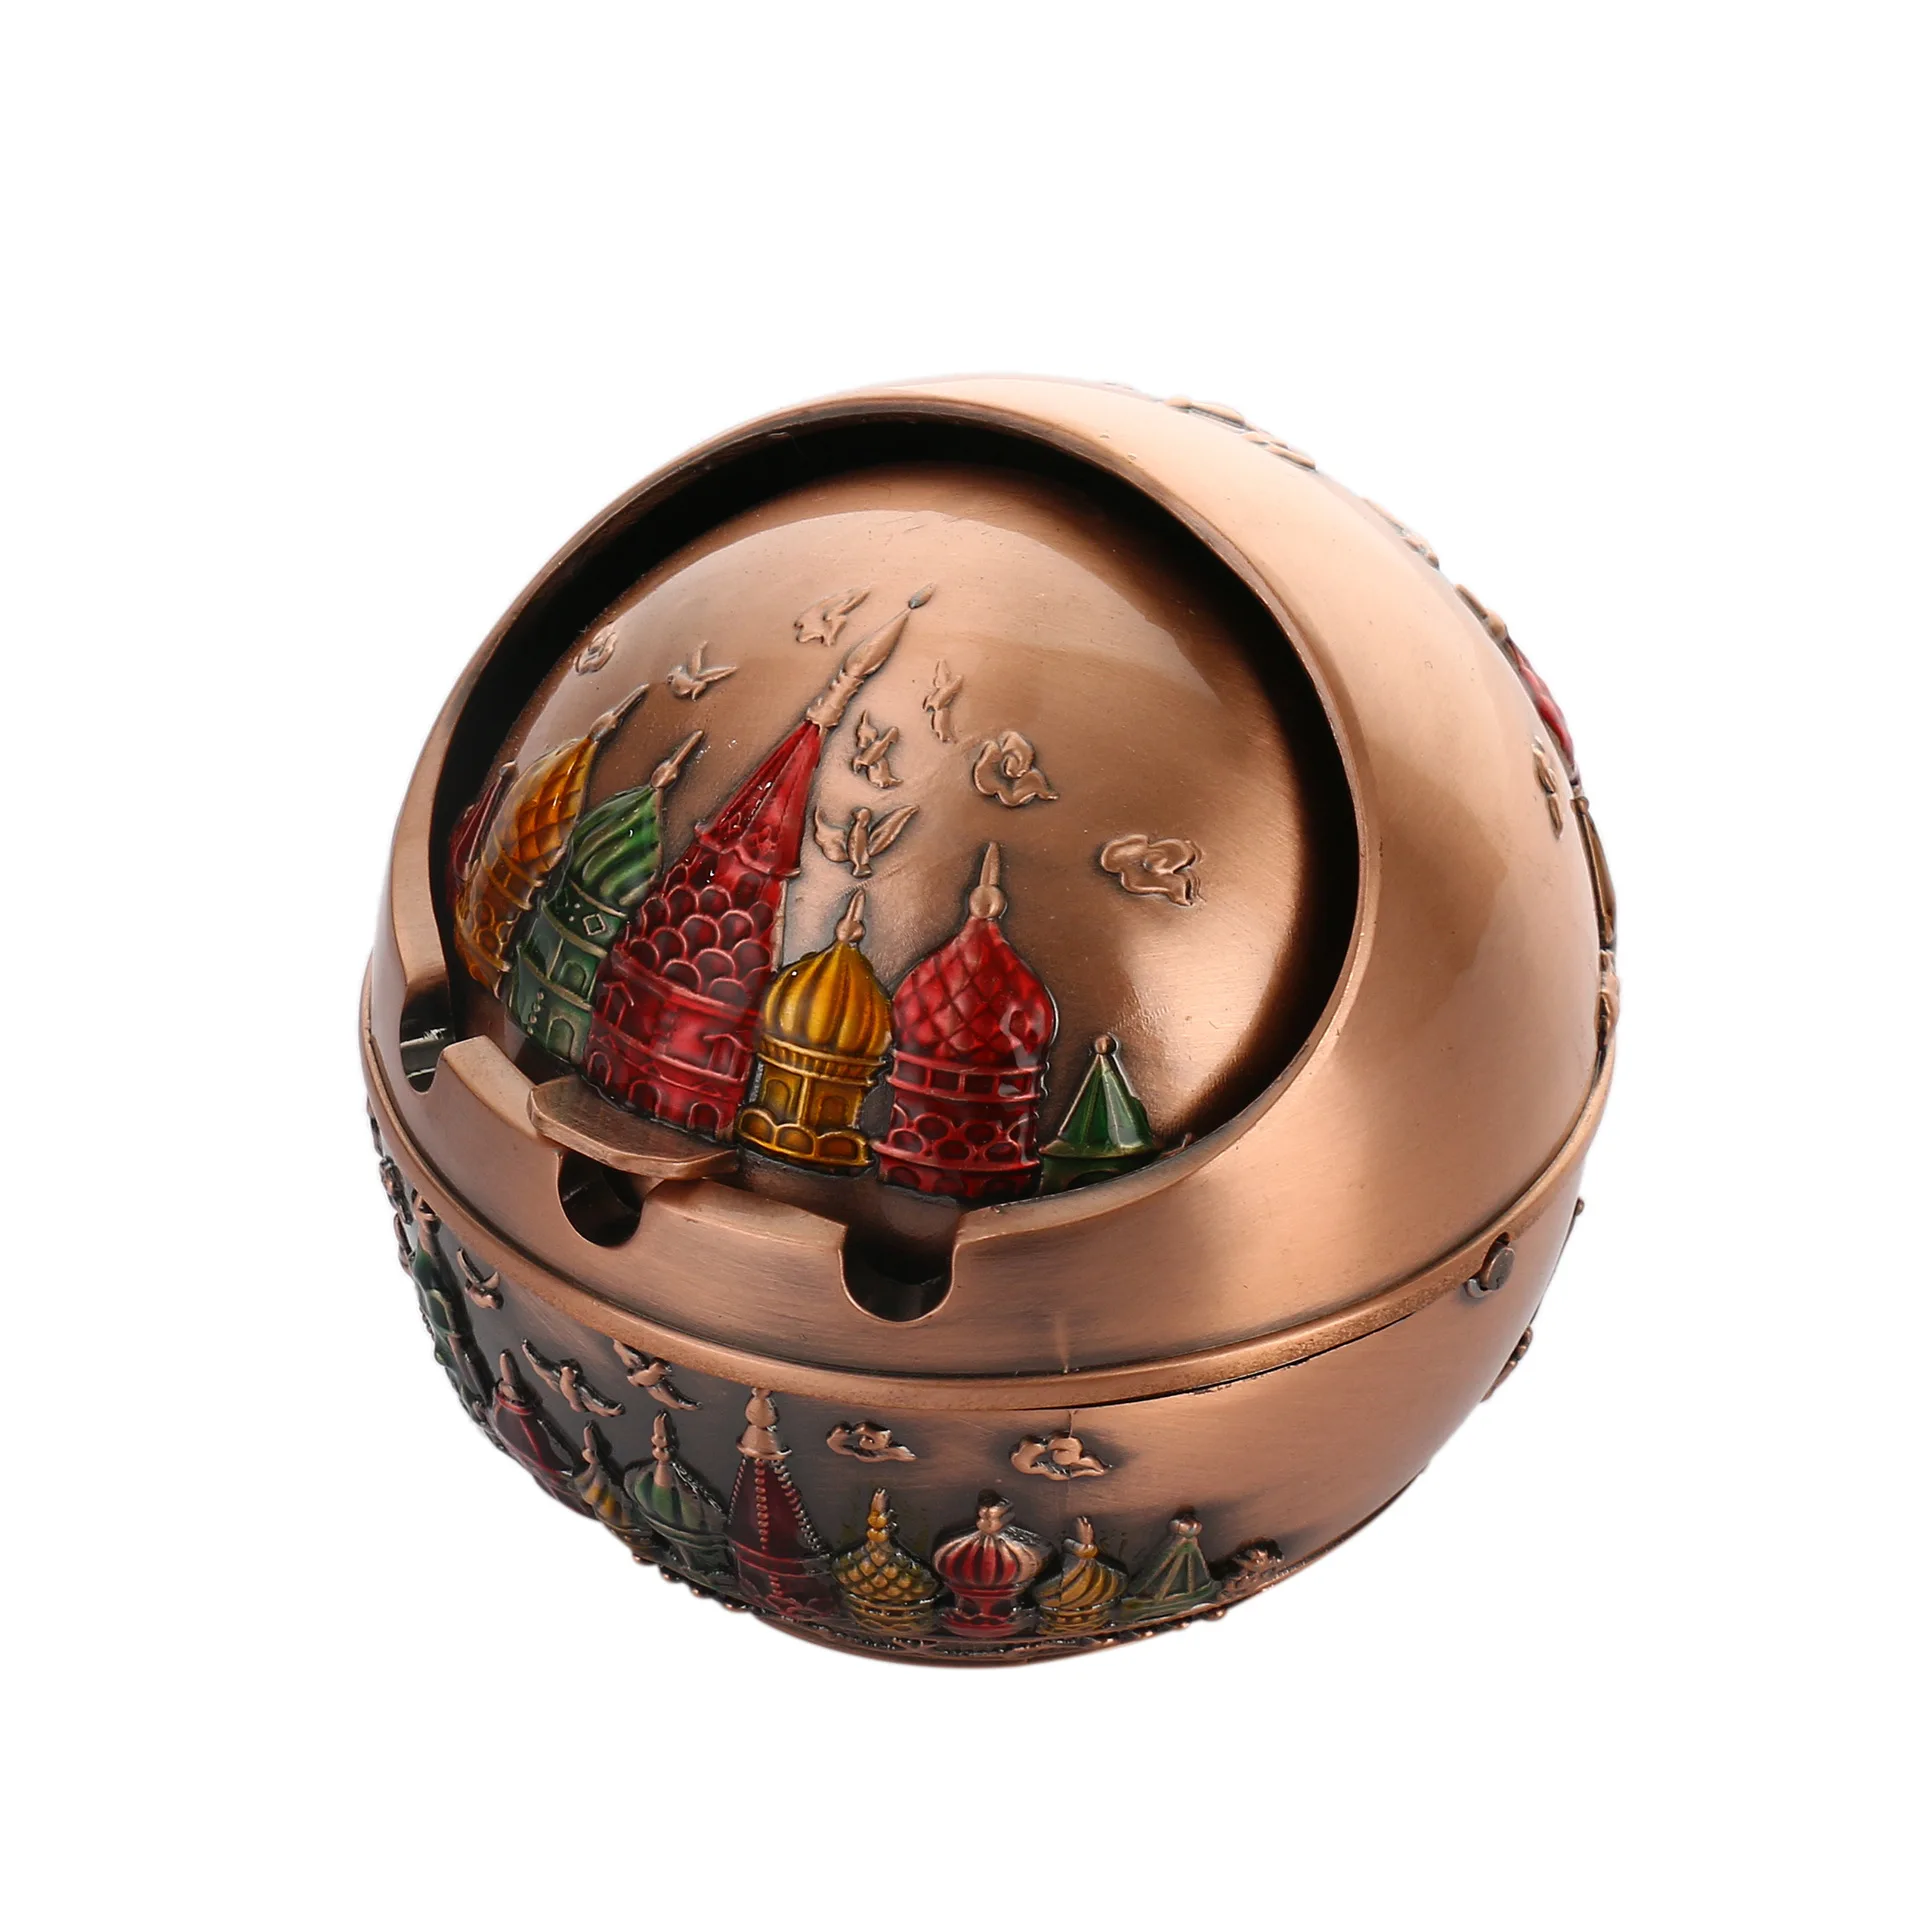 Русский шар замок металлическая пепельница, зажигалки и аксессуары для курения, металлические декоративные искусства и ремесла. Для мужчин, подарок